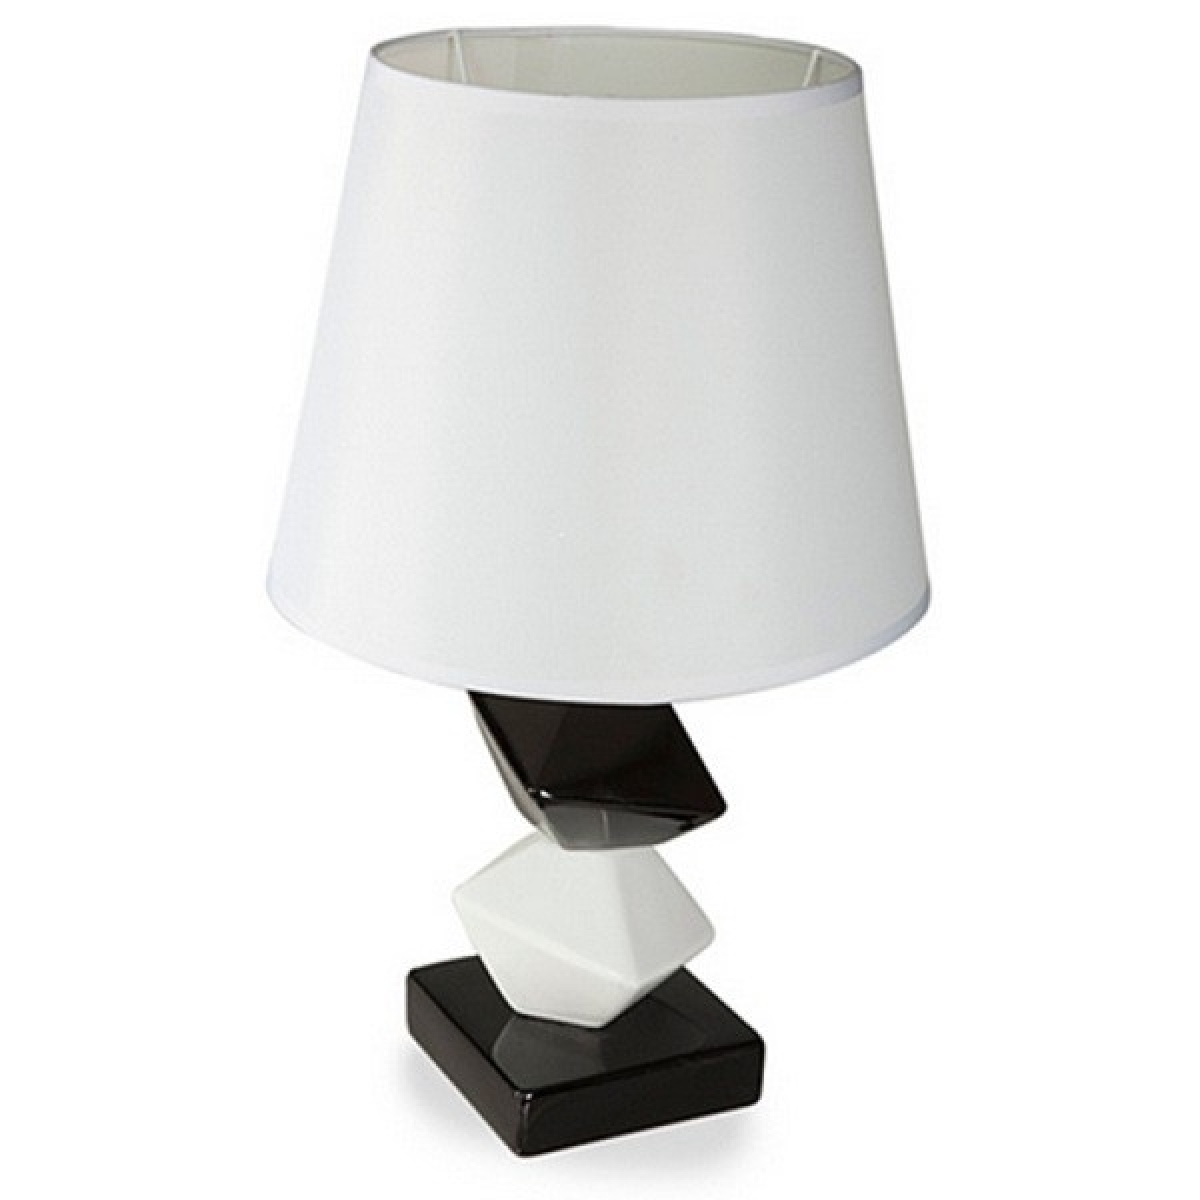 Lampa ceramiczna DEBBIE 1A Biały /Czarny Lampa ceramiczna DEBBIE 1A Biały /Czarny